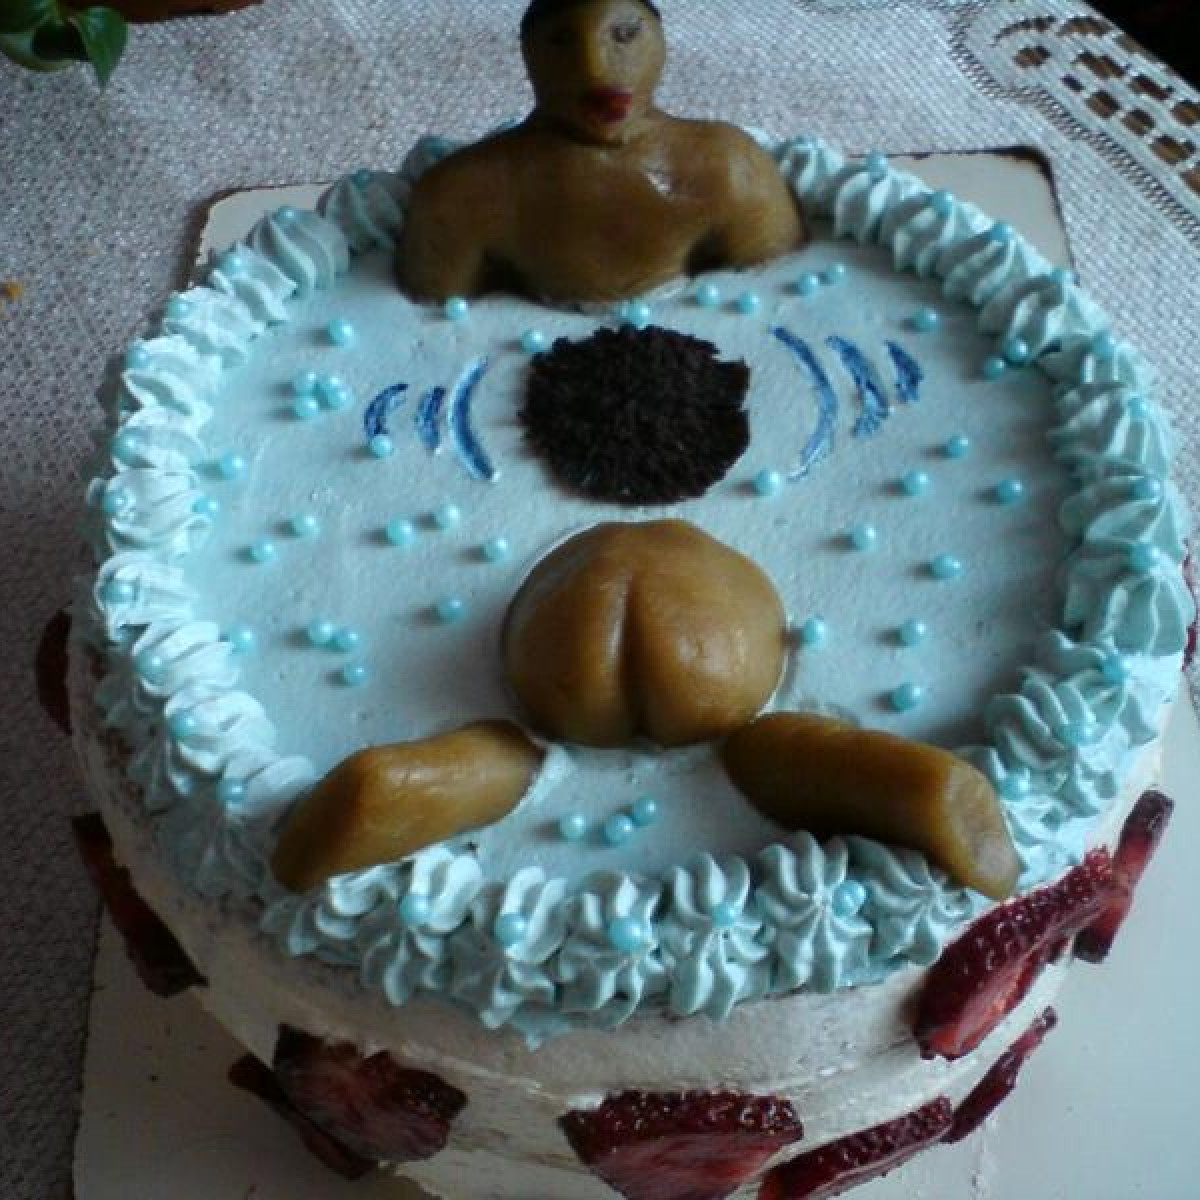 tort na urodziny szwagra:P